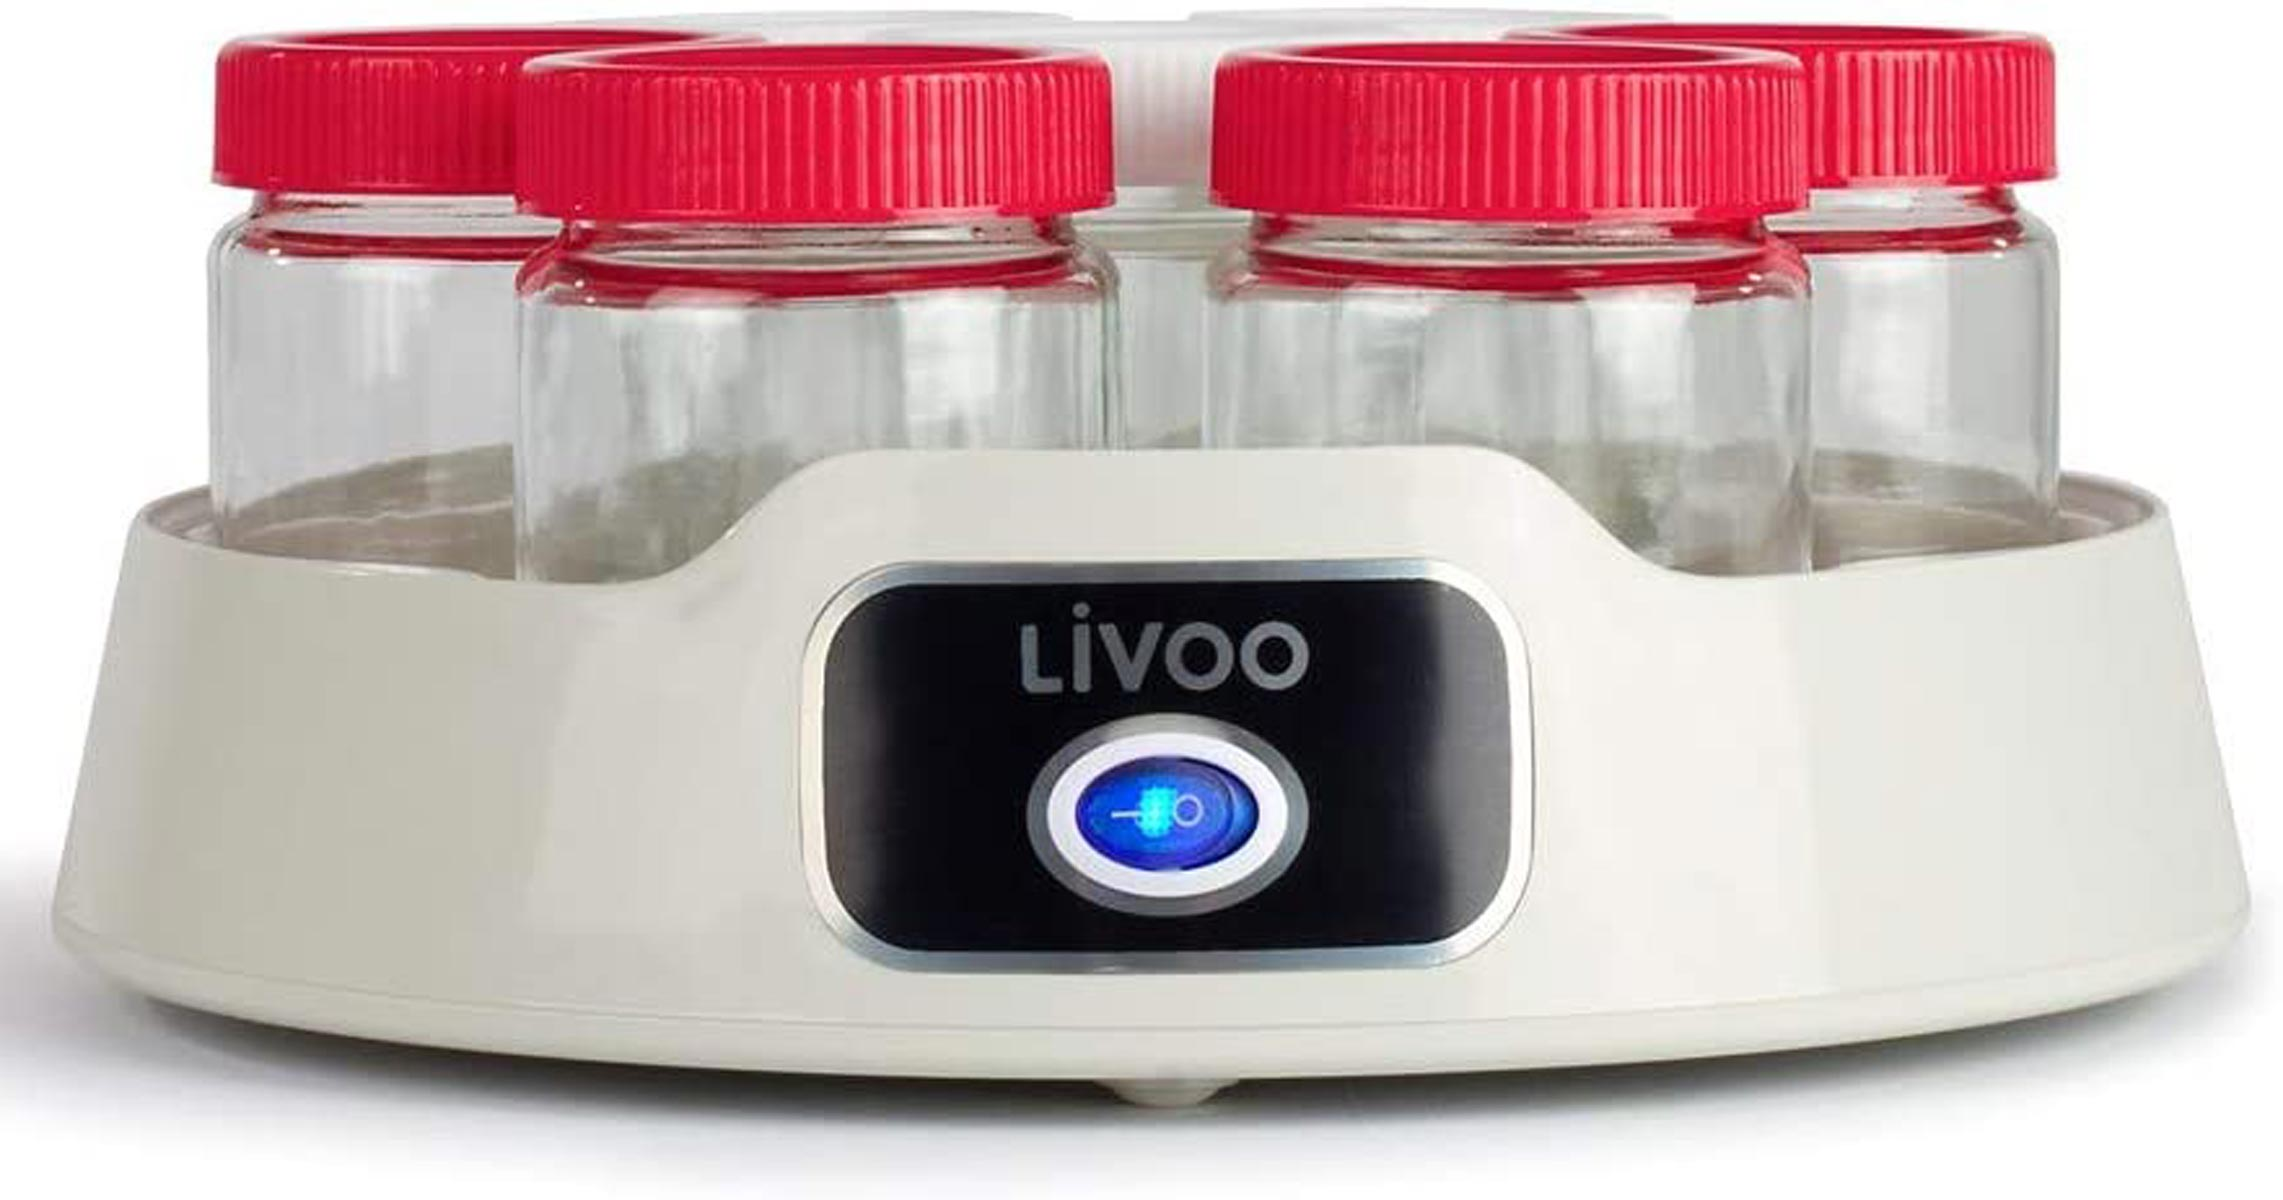 DOP180 LIVOO (20 Watt) Joghurtbereiter